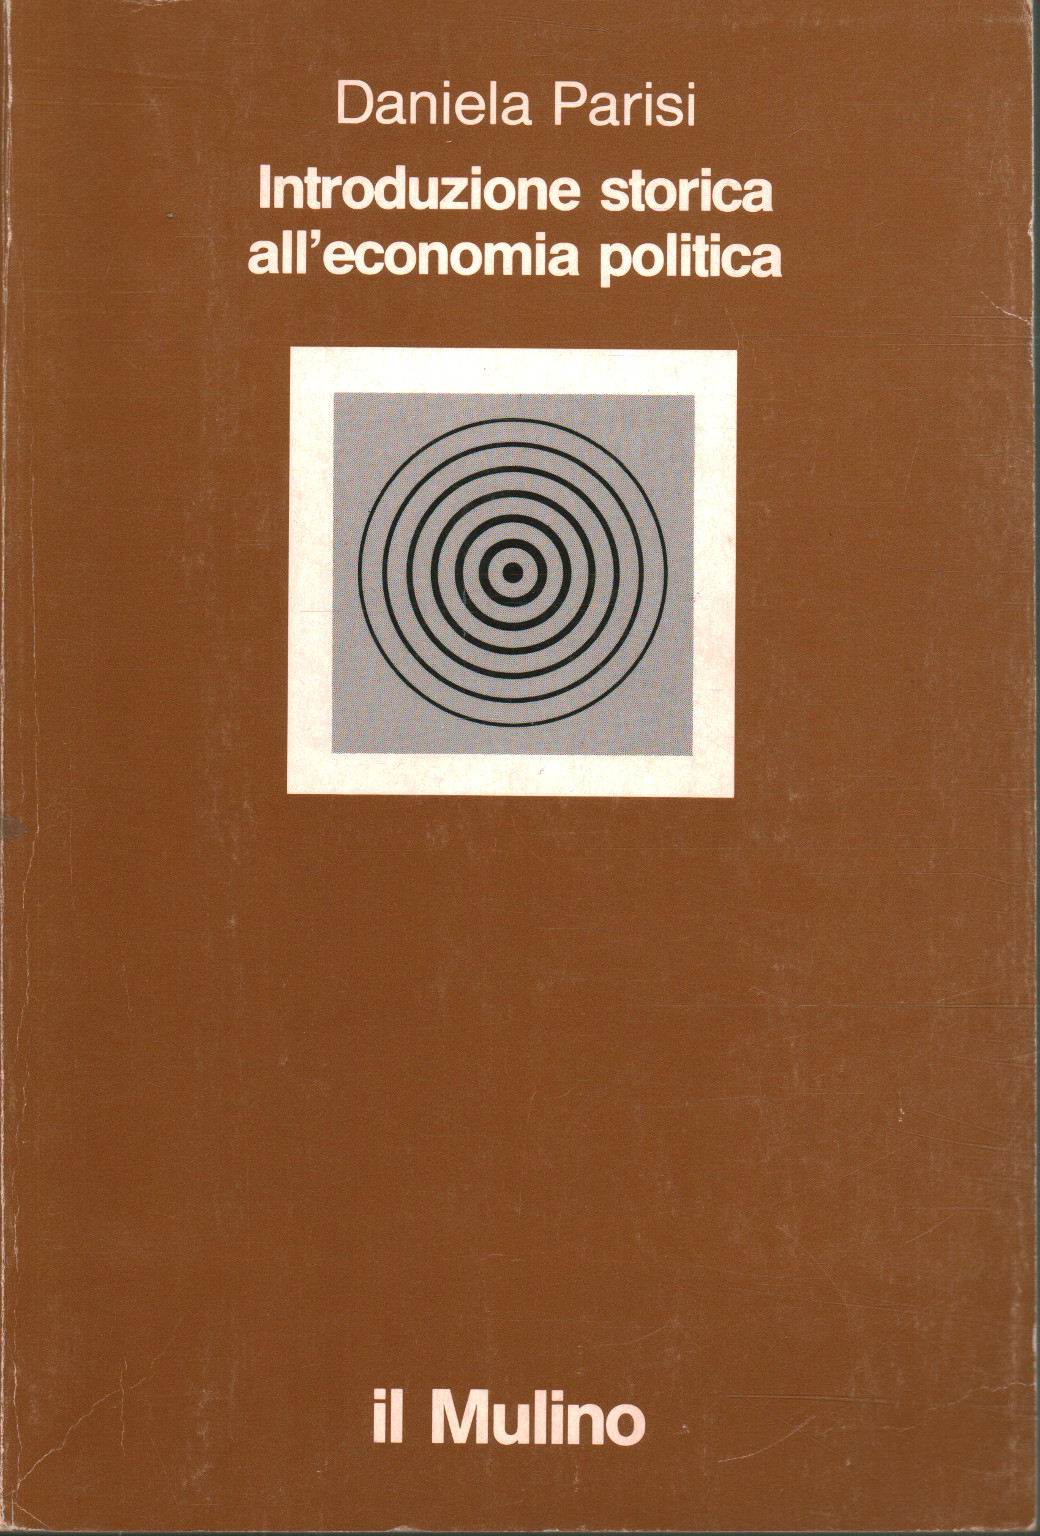 Introduzione storica all economia politica, Daniela Parisi